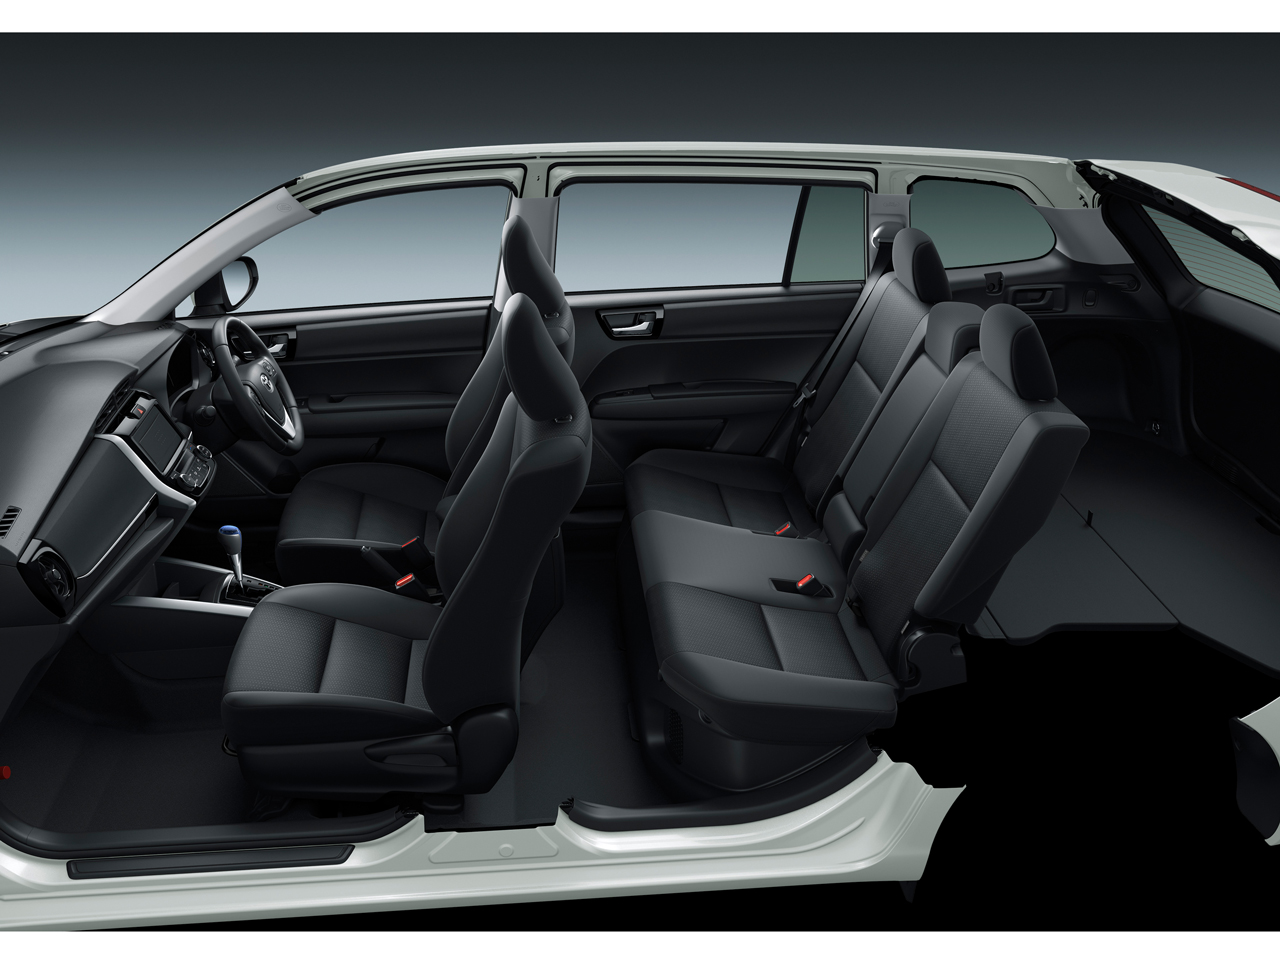 トヨタ カローラ フィールダー ハイブリッド 13年モデル Hybrid G Red 価格 性能 装備 オプション 16年5月10日発売 価格 Com